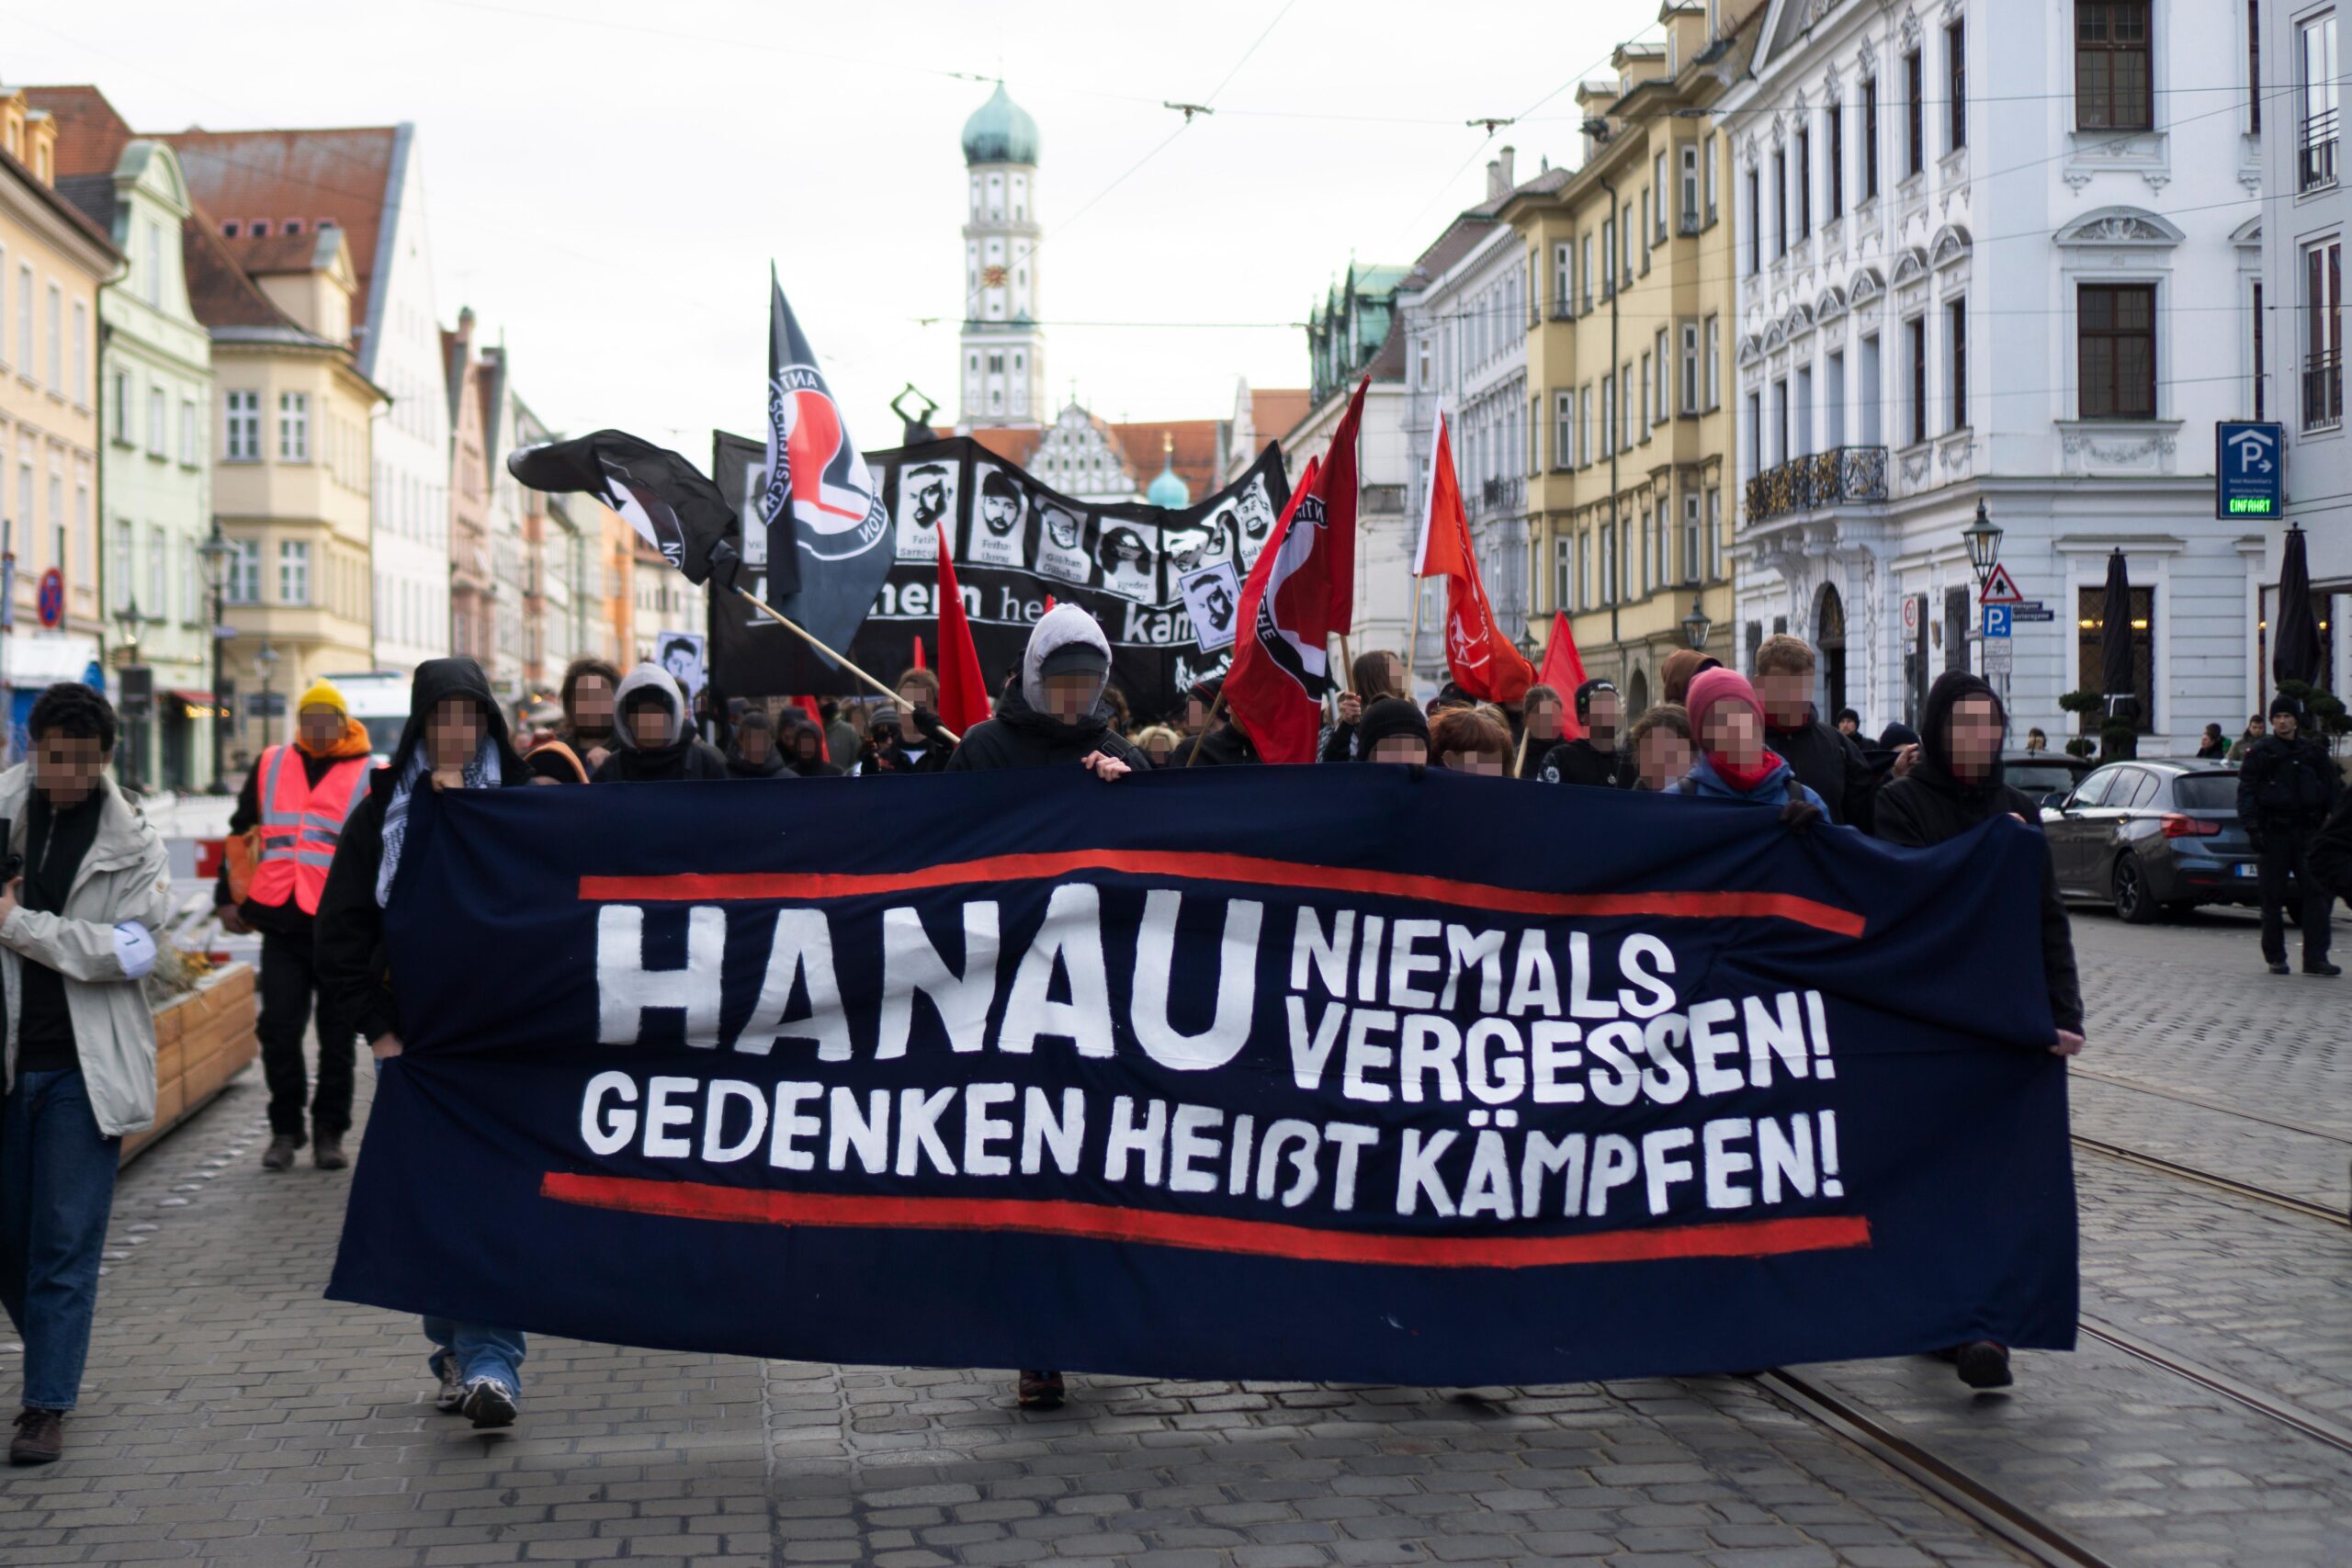 150 Antifaschist*innen auf Gedenk-Demonstration zum rassistischen Anschlag in Hanau vor 3 Jahren!